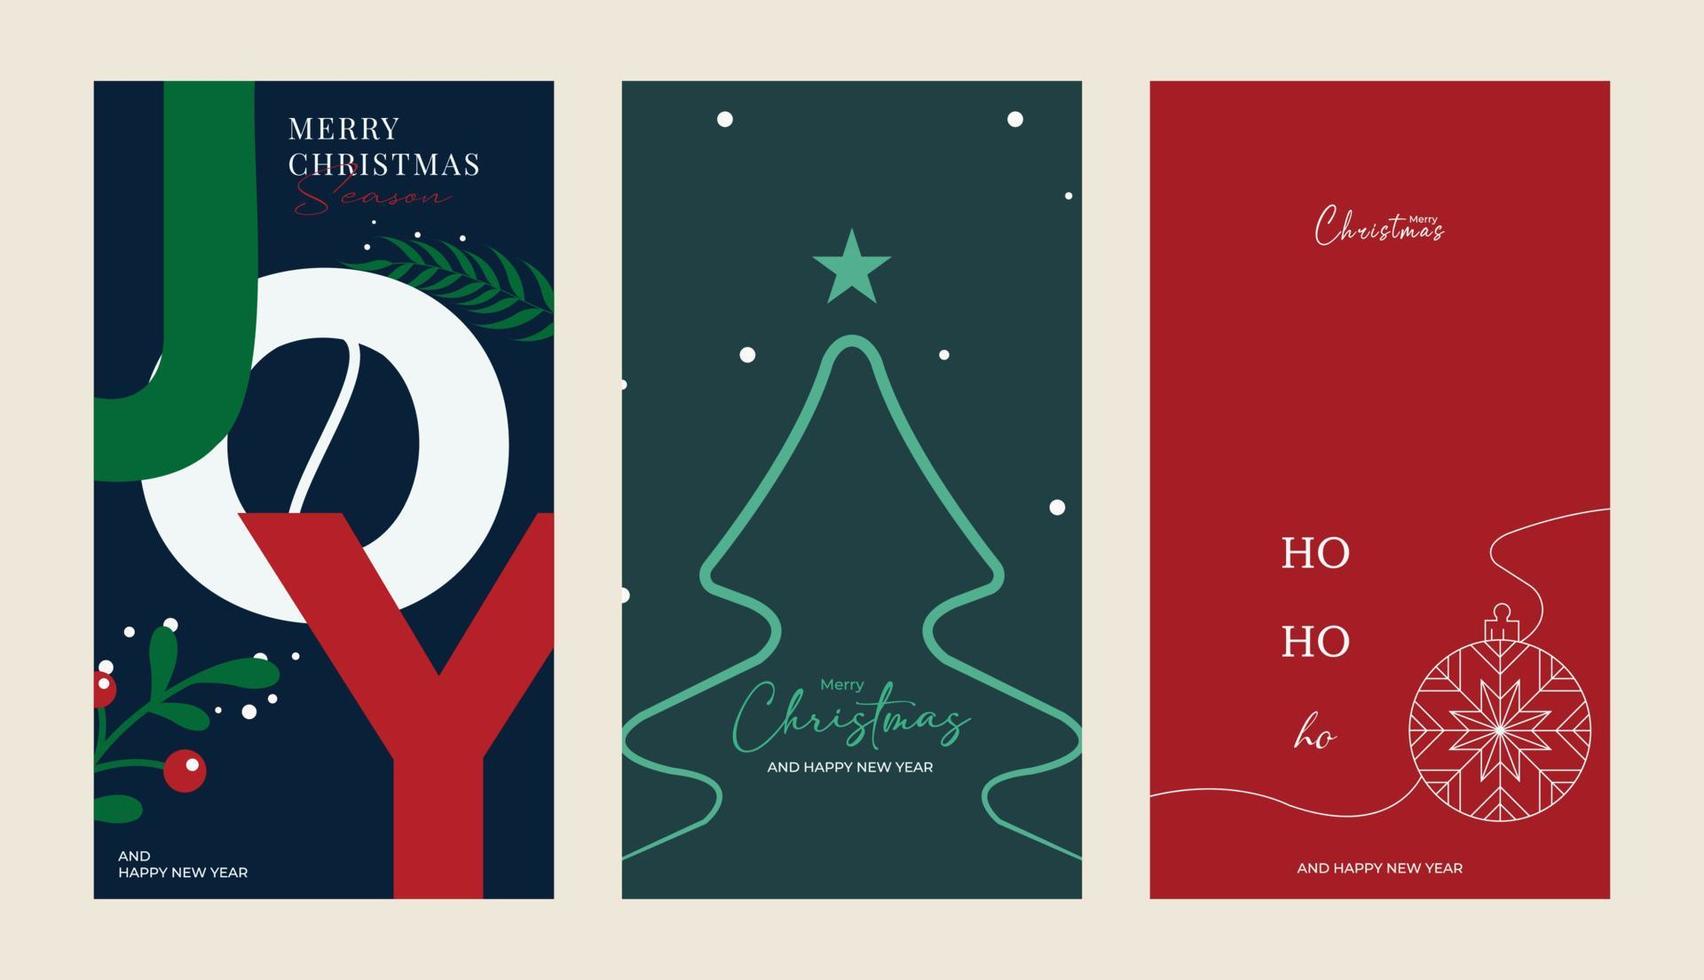 vrolijk Kerstmis en gelukkig nieuw jaar reeks van groet kaarten, affiches, vakantie dekt. modern Kerstmis ontwerp met driehoek sparren patroon in groente, rood, wit kleuren. Kerstmis boom, bal, decoratie elementen vector